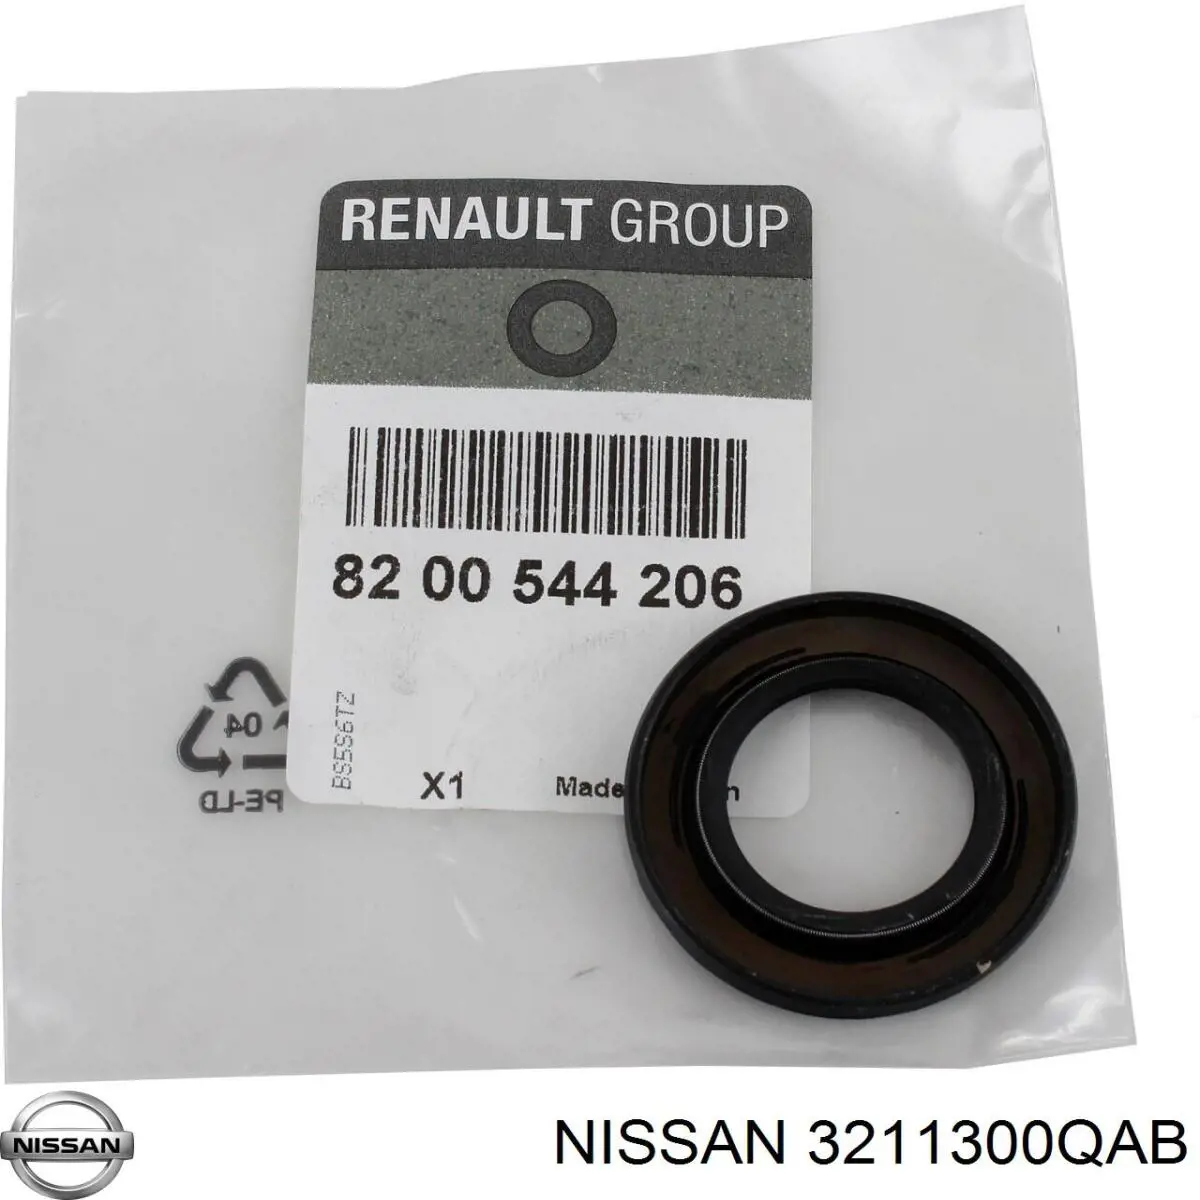 3211300QAB Nissan anillo reten caja de cambios